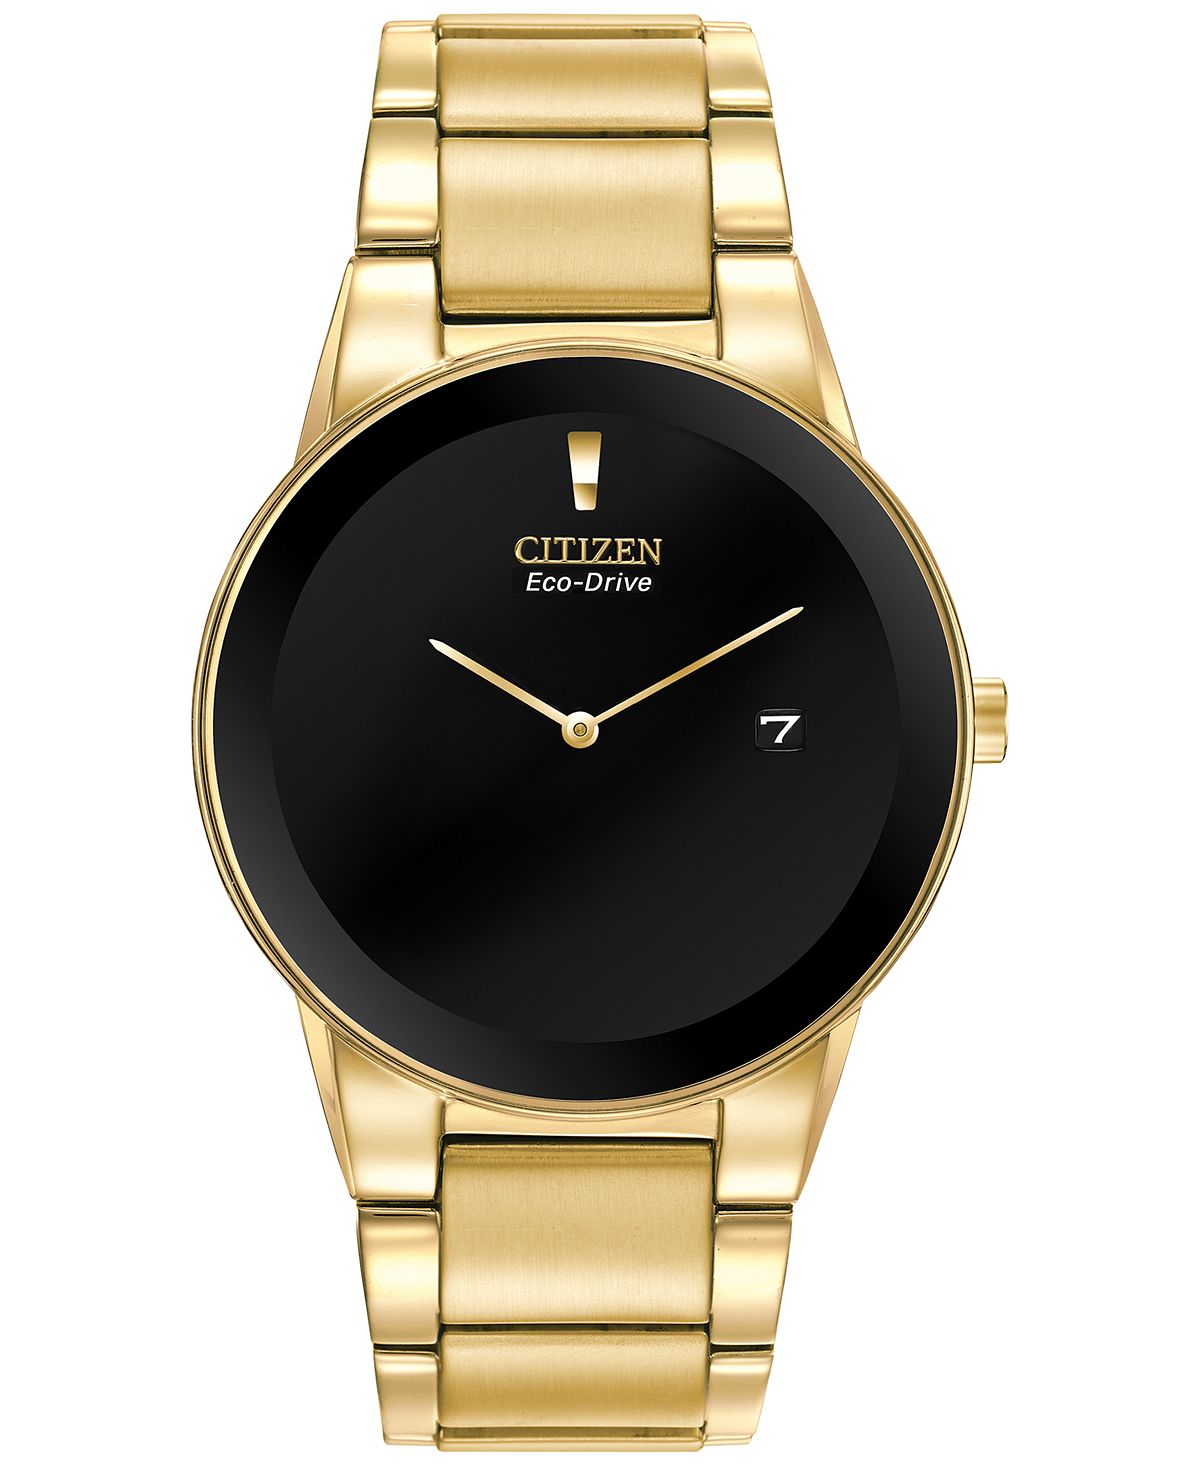 Мужские часы Axiom Eco-Drive с золотистым браслетом из нержавеющей стали, 40 мм, AU1062-56E Citizen часы citizen ca0454 56e